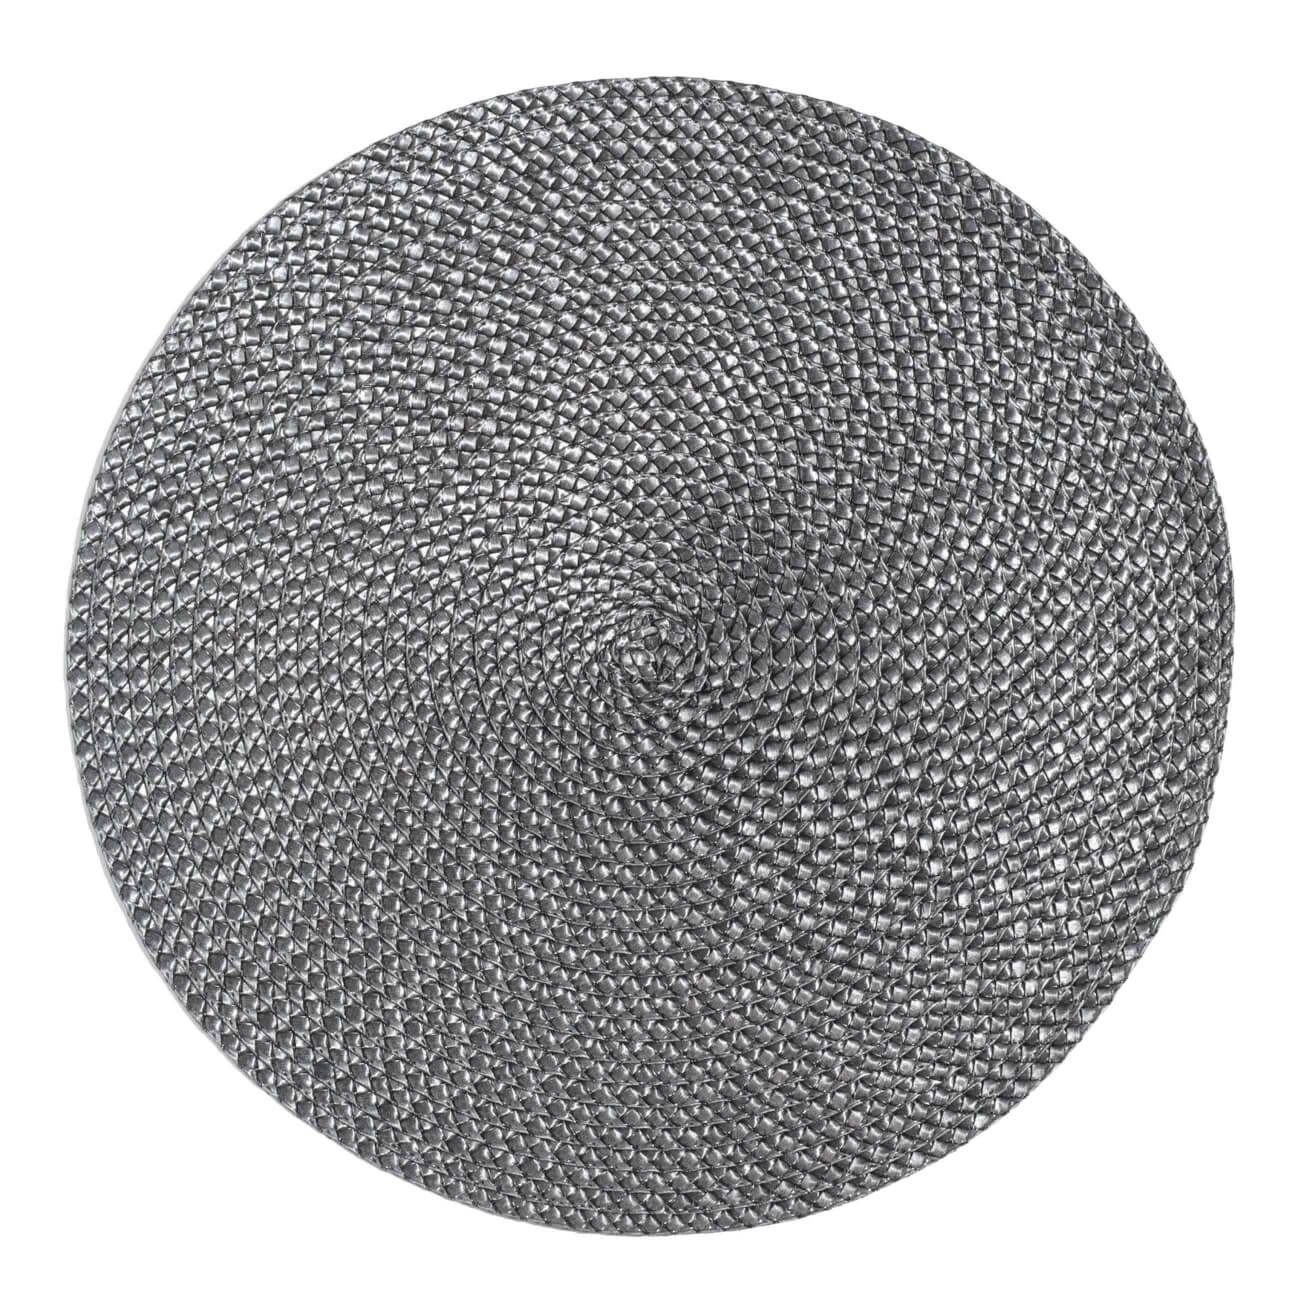 Салфетка под приборы, 38 см, полипропилен/ПЭТ, круглая, темно-серая, Circle braid - фото 1